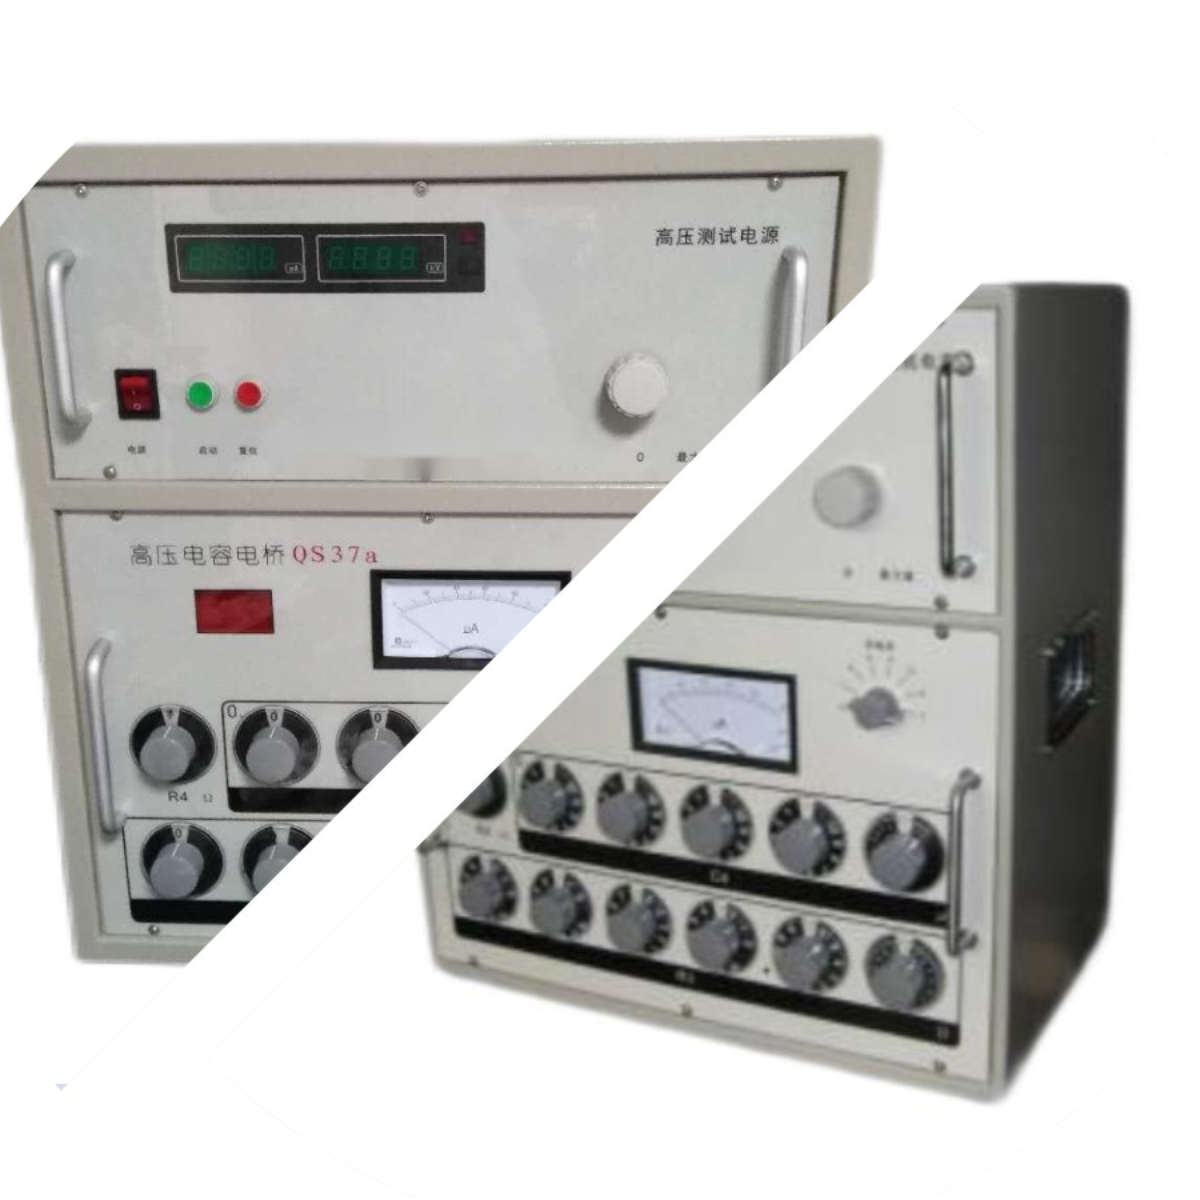 工频介电常数介质损耗试验仪